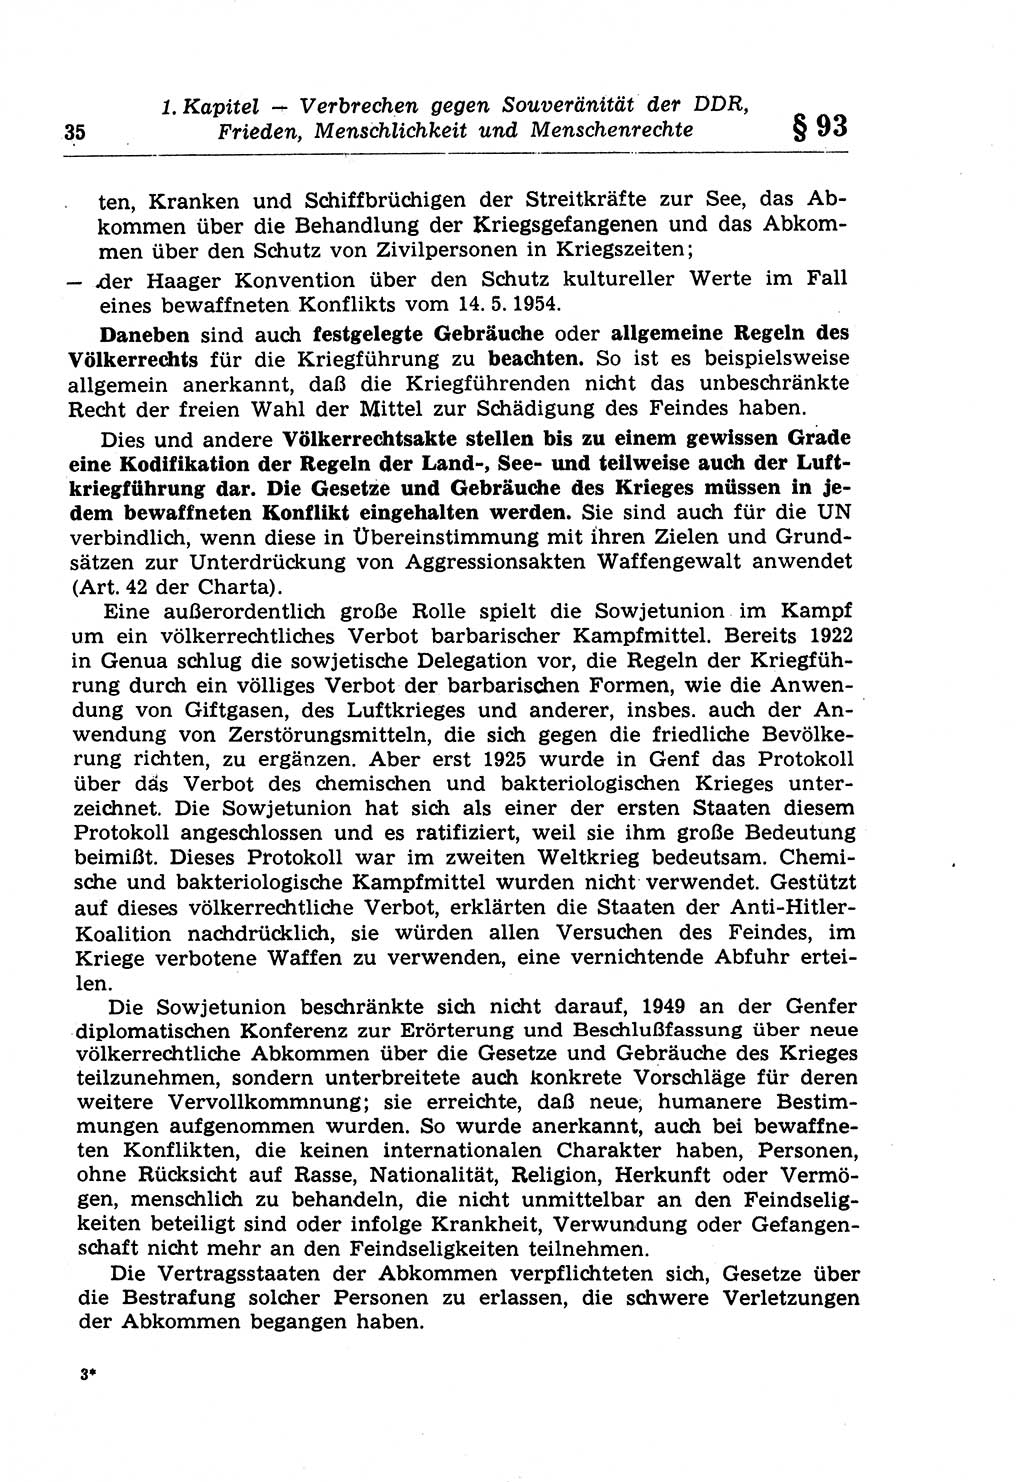 Strafrecht der Deutschen Demokratischen Republik (DDR), Lehrkommentar zum Strafgesetzbuch (StGB), Besonderer Teil 1970, Seite 35 (Strafr. DDR Lehrkomm. StGB BT 1970, S. 35)